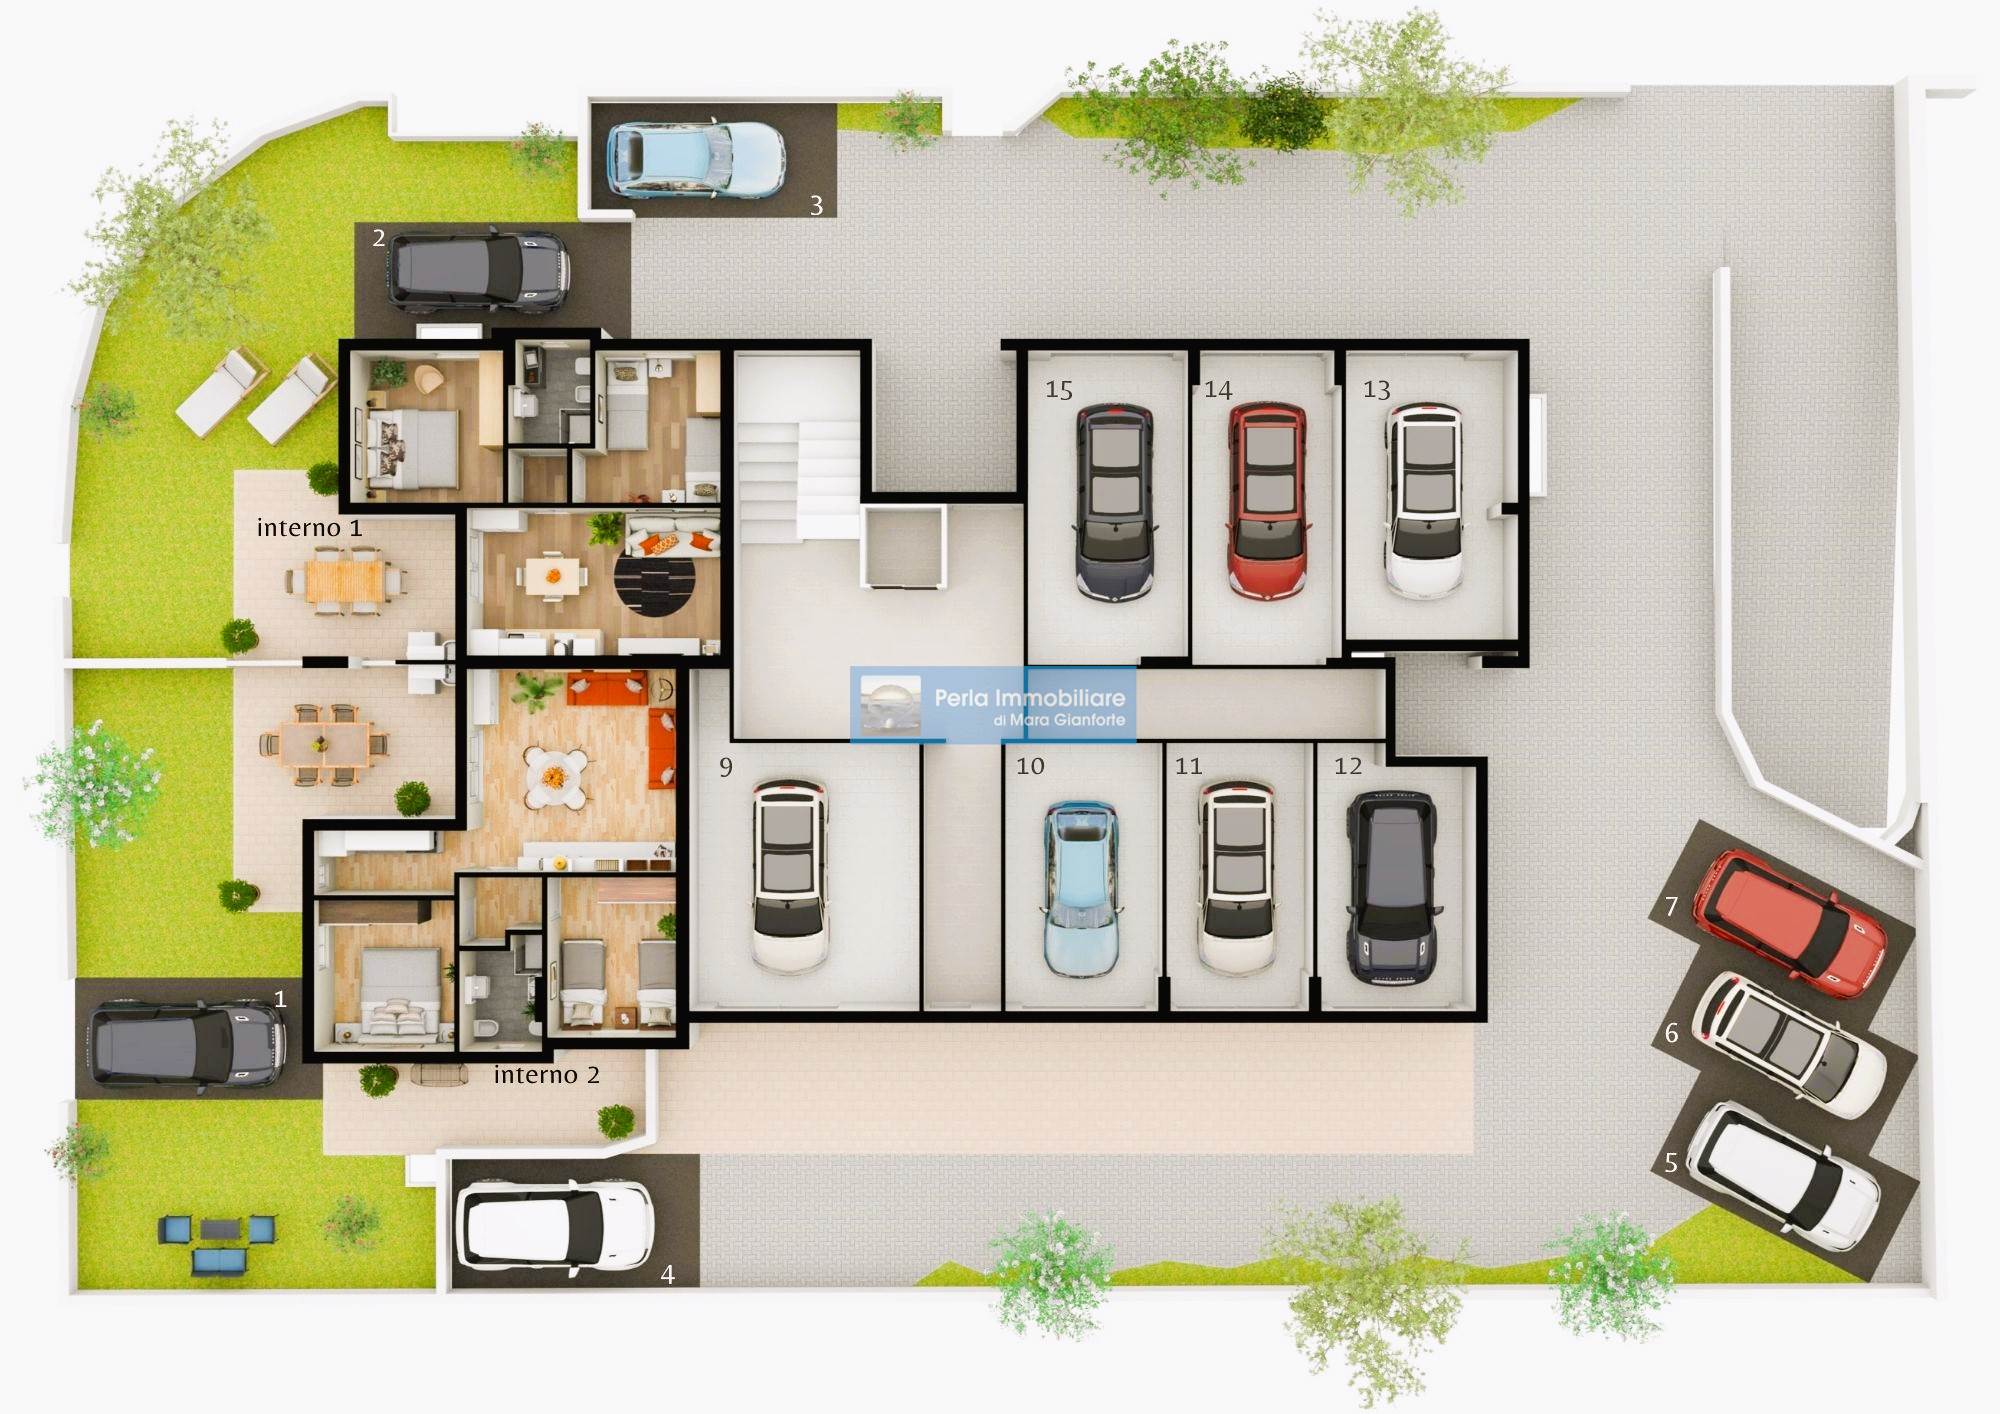 Come vorresti la tua casa? Mara Gianforte di Perla Immobiliare fa diventare realtà i tuoi sogni